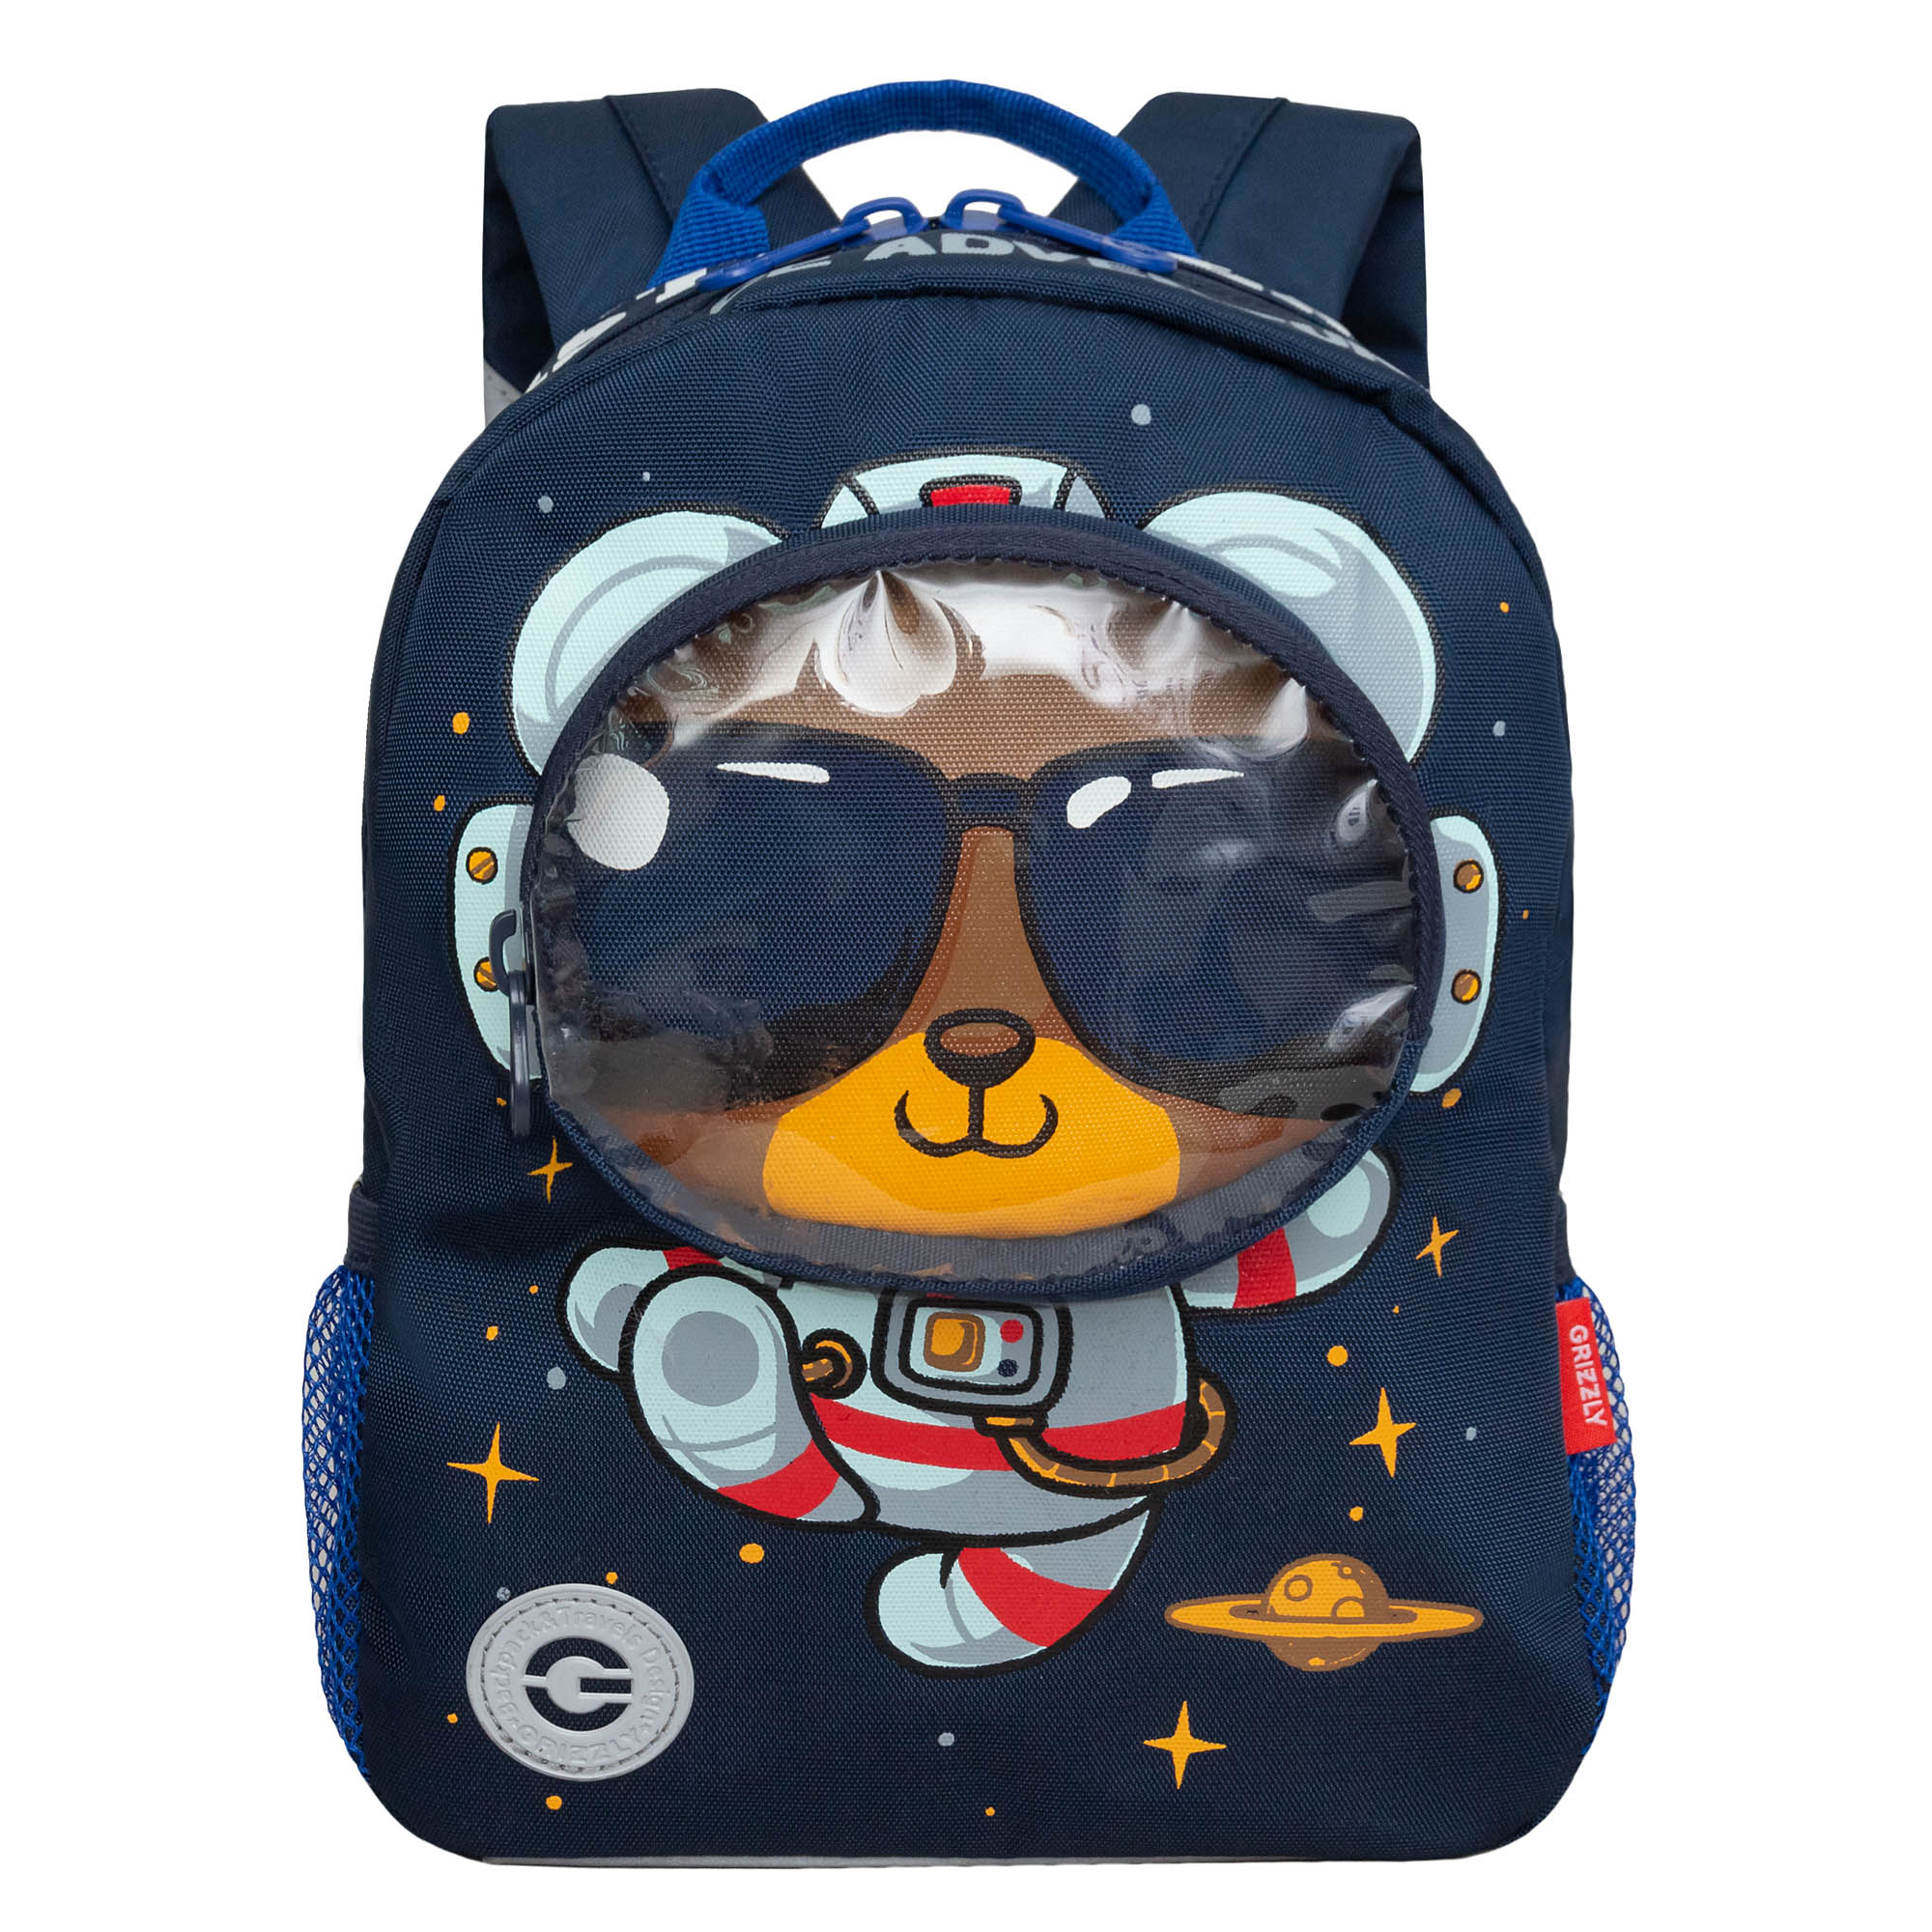 RK-477-1 рюкзак детский